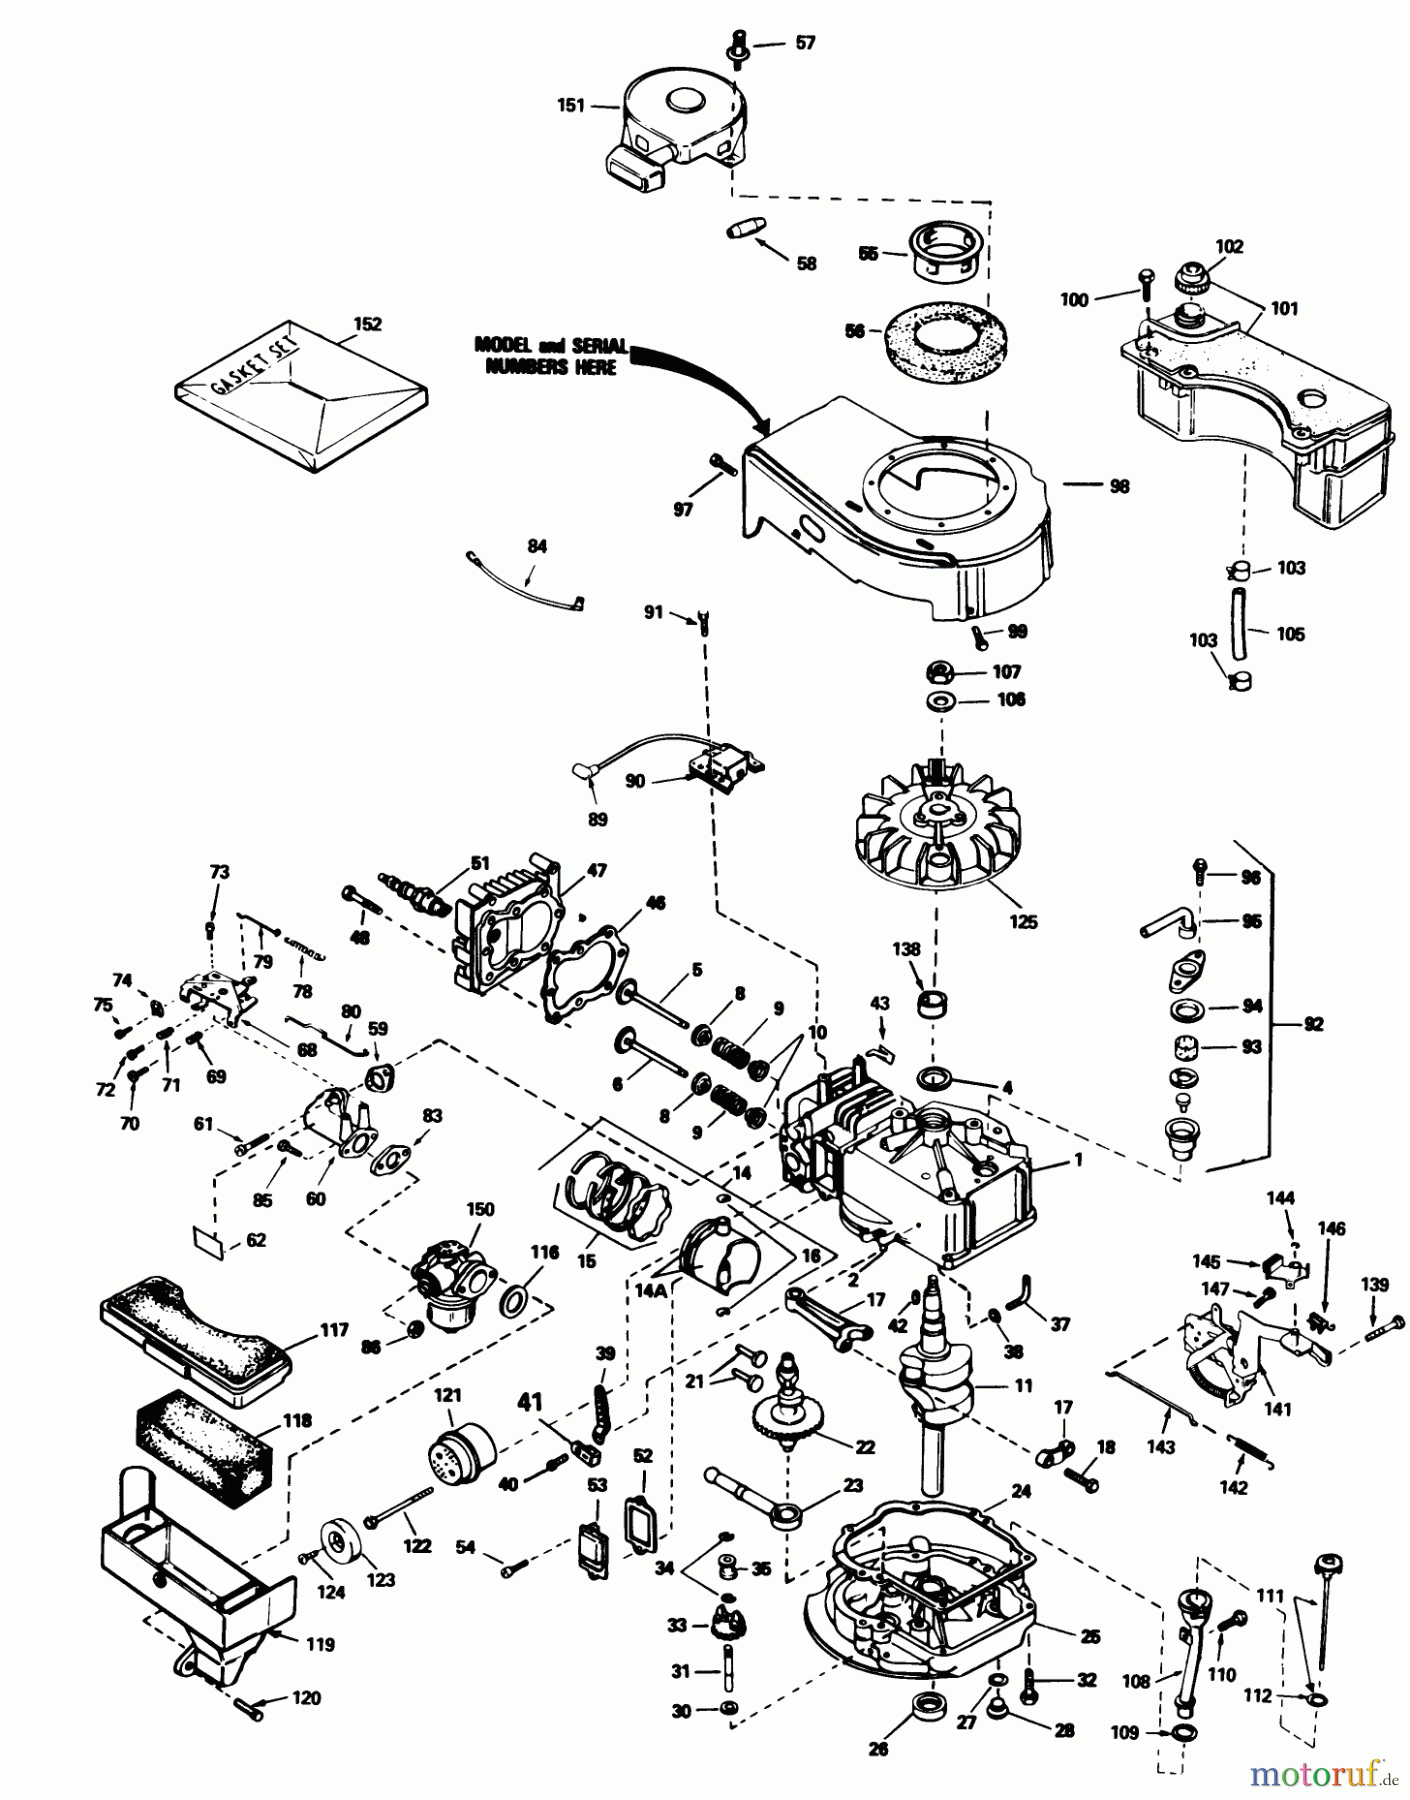  Toro Neu Mowers, Walk-Behind Seite 1 20588 - Toro Lawnmower, 1985 (5000001-5999999) ENGINE TECUMSEH MODEL NO. TVS90-43228D